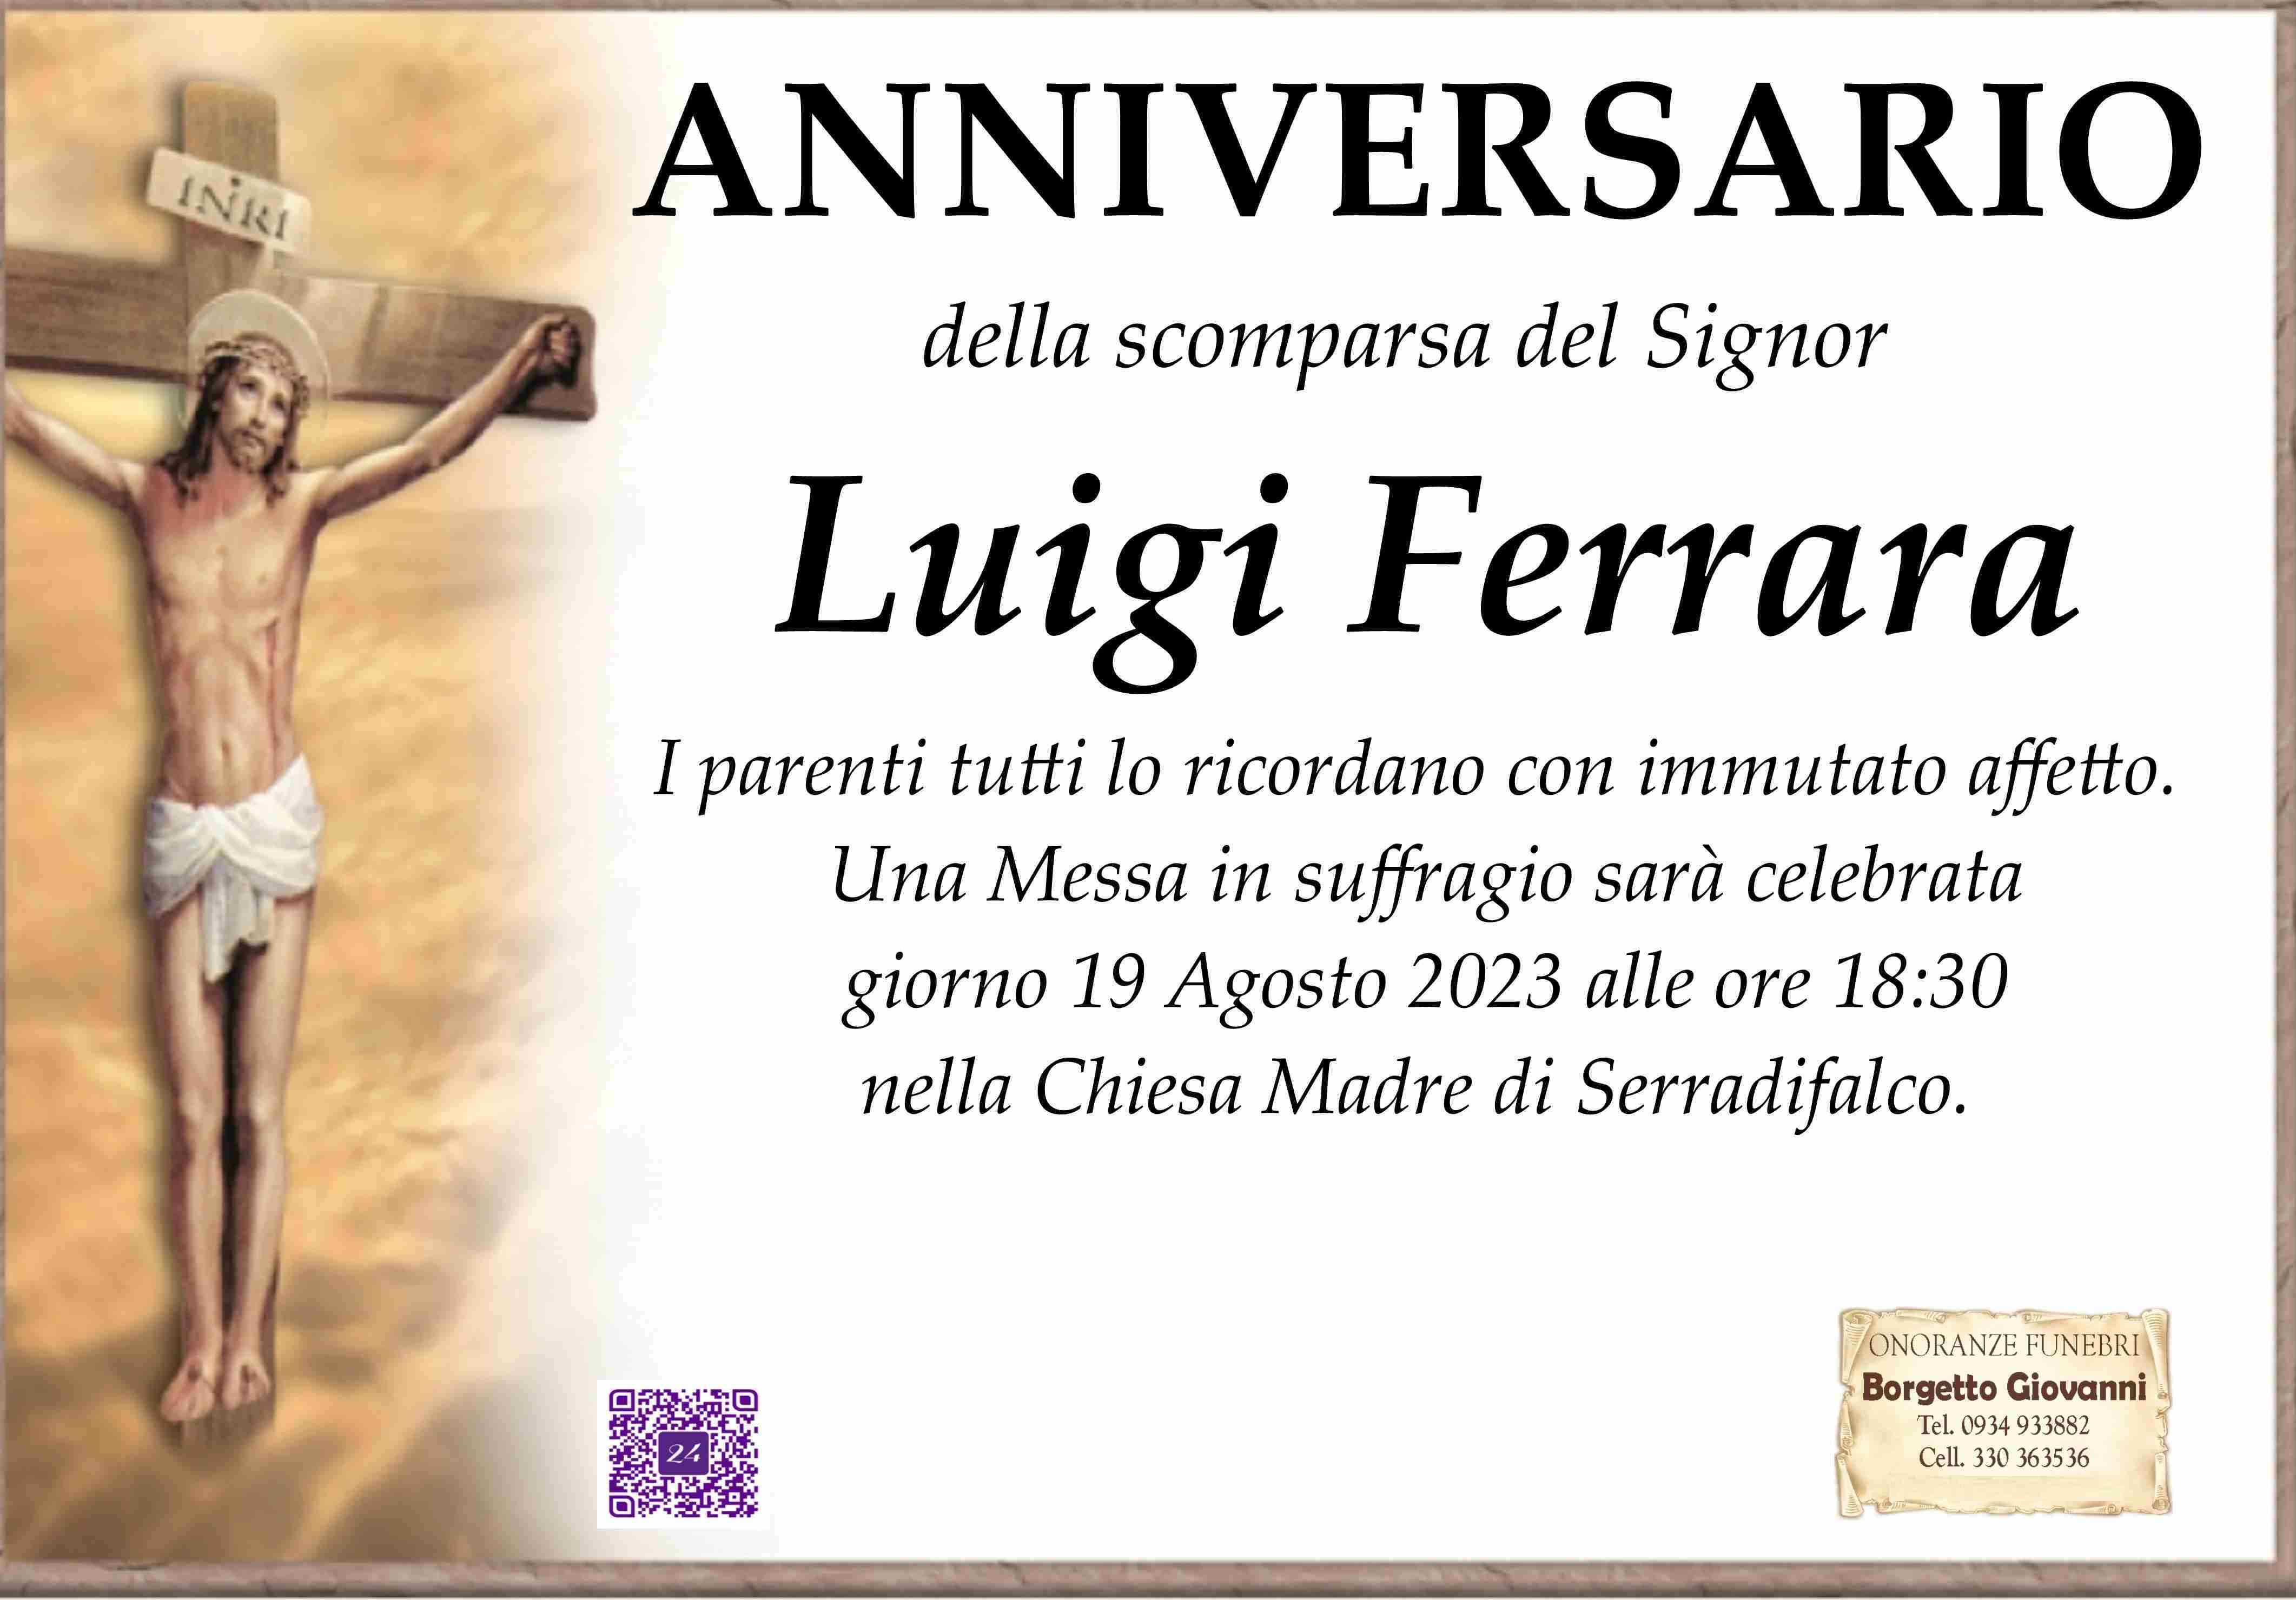 Luigi Ferrara